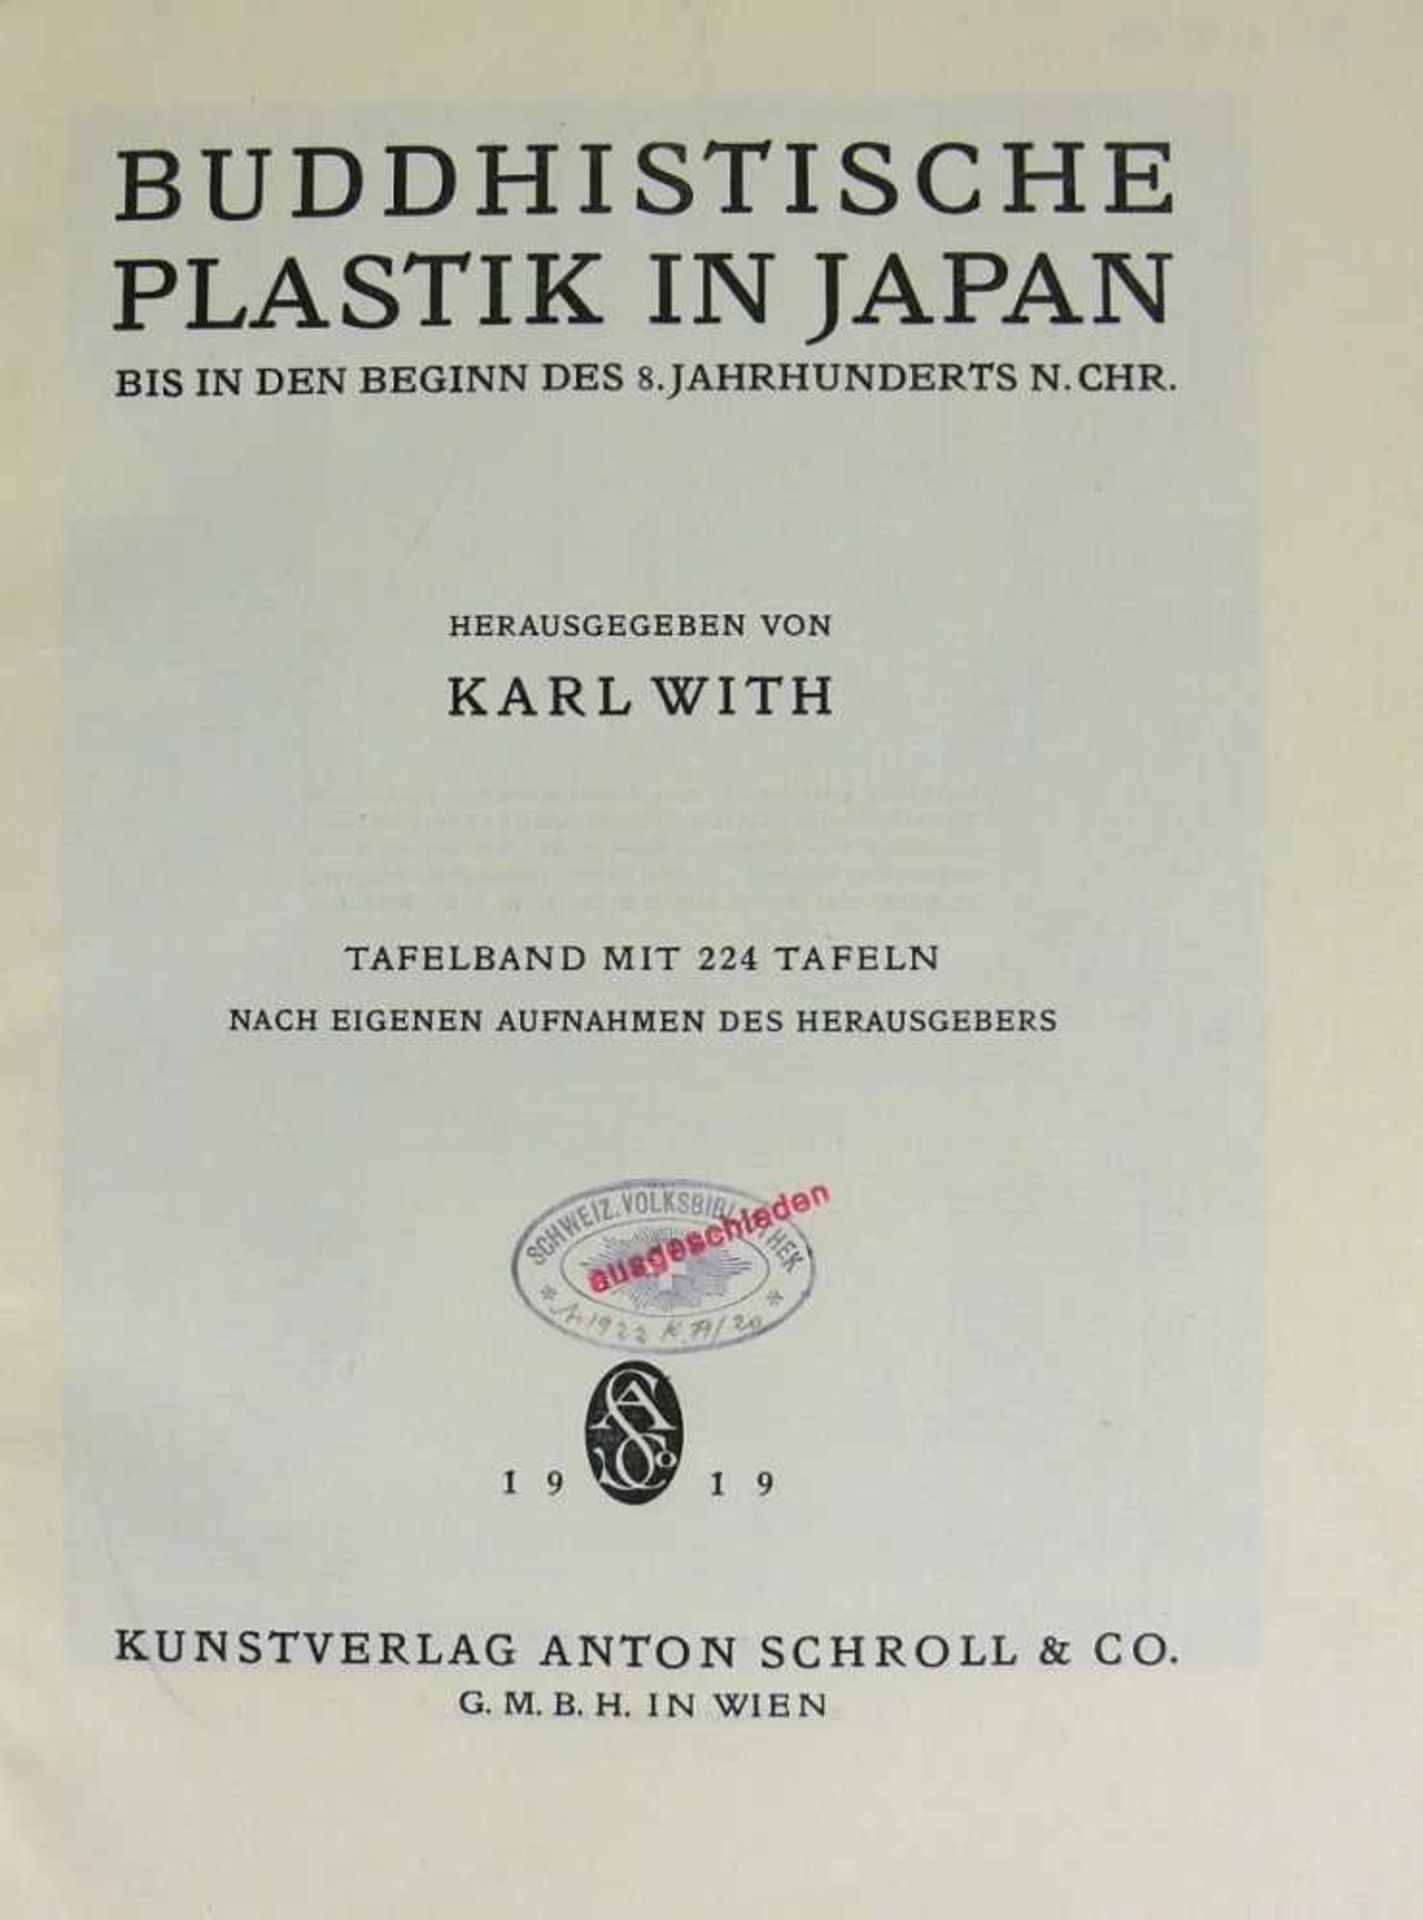 Buddhistische Plastik in Japan von Karl With; Tafelband mit 224 Tafeln; Kunstverlag Schroll, Wien - Bild 2 aus 3